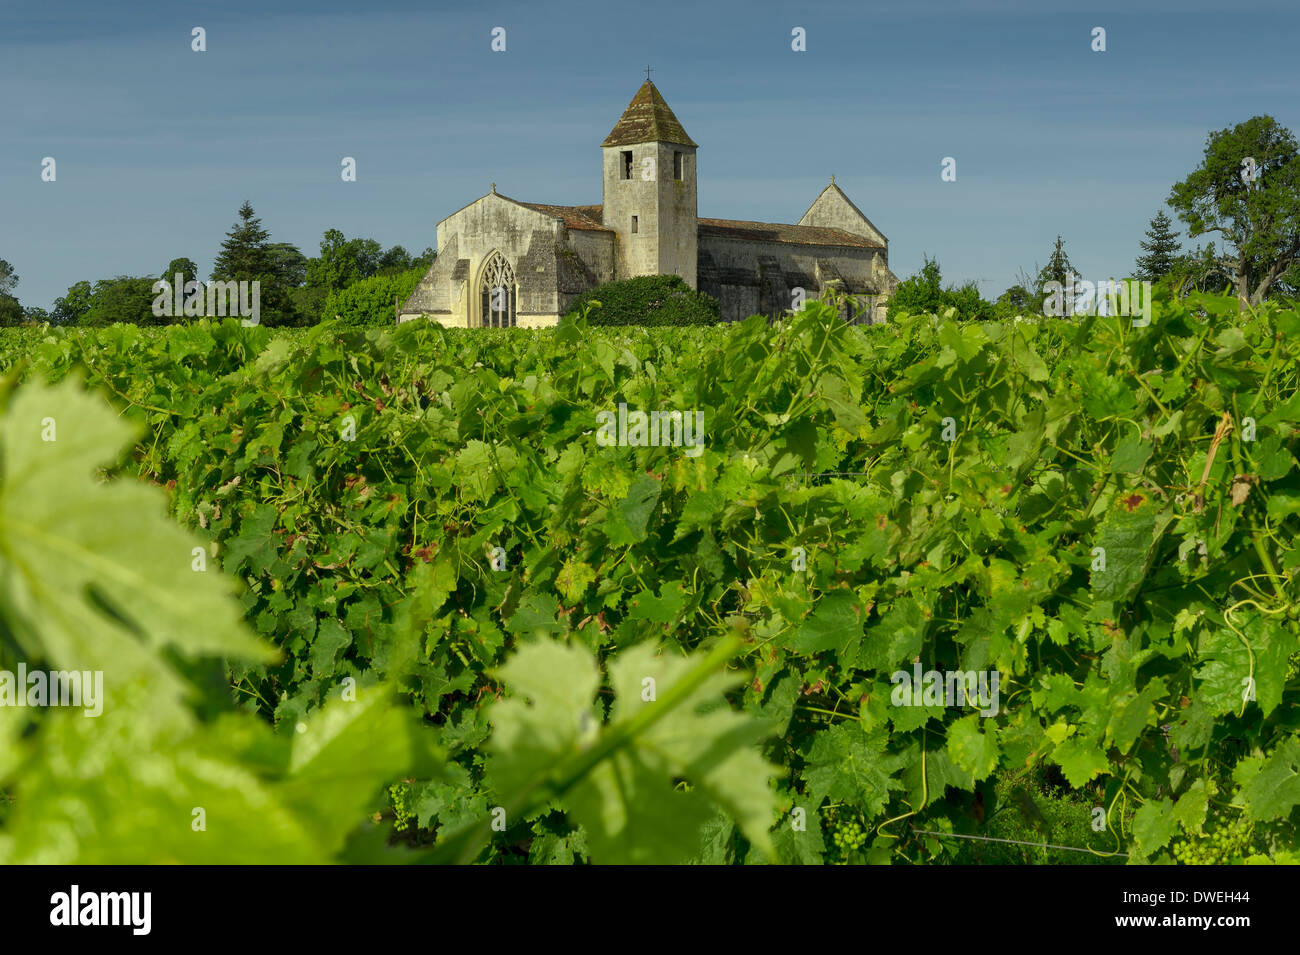 Église d'Agudelle près de vignobles, Haute-Saintonge, Charente-Maritime, France Banque D'Images